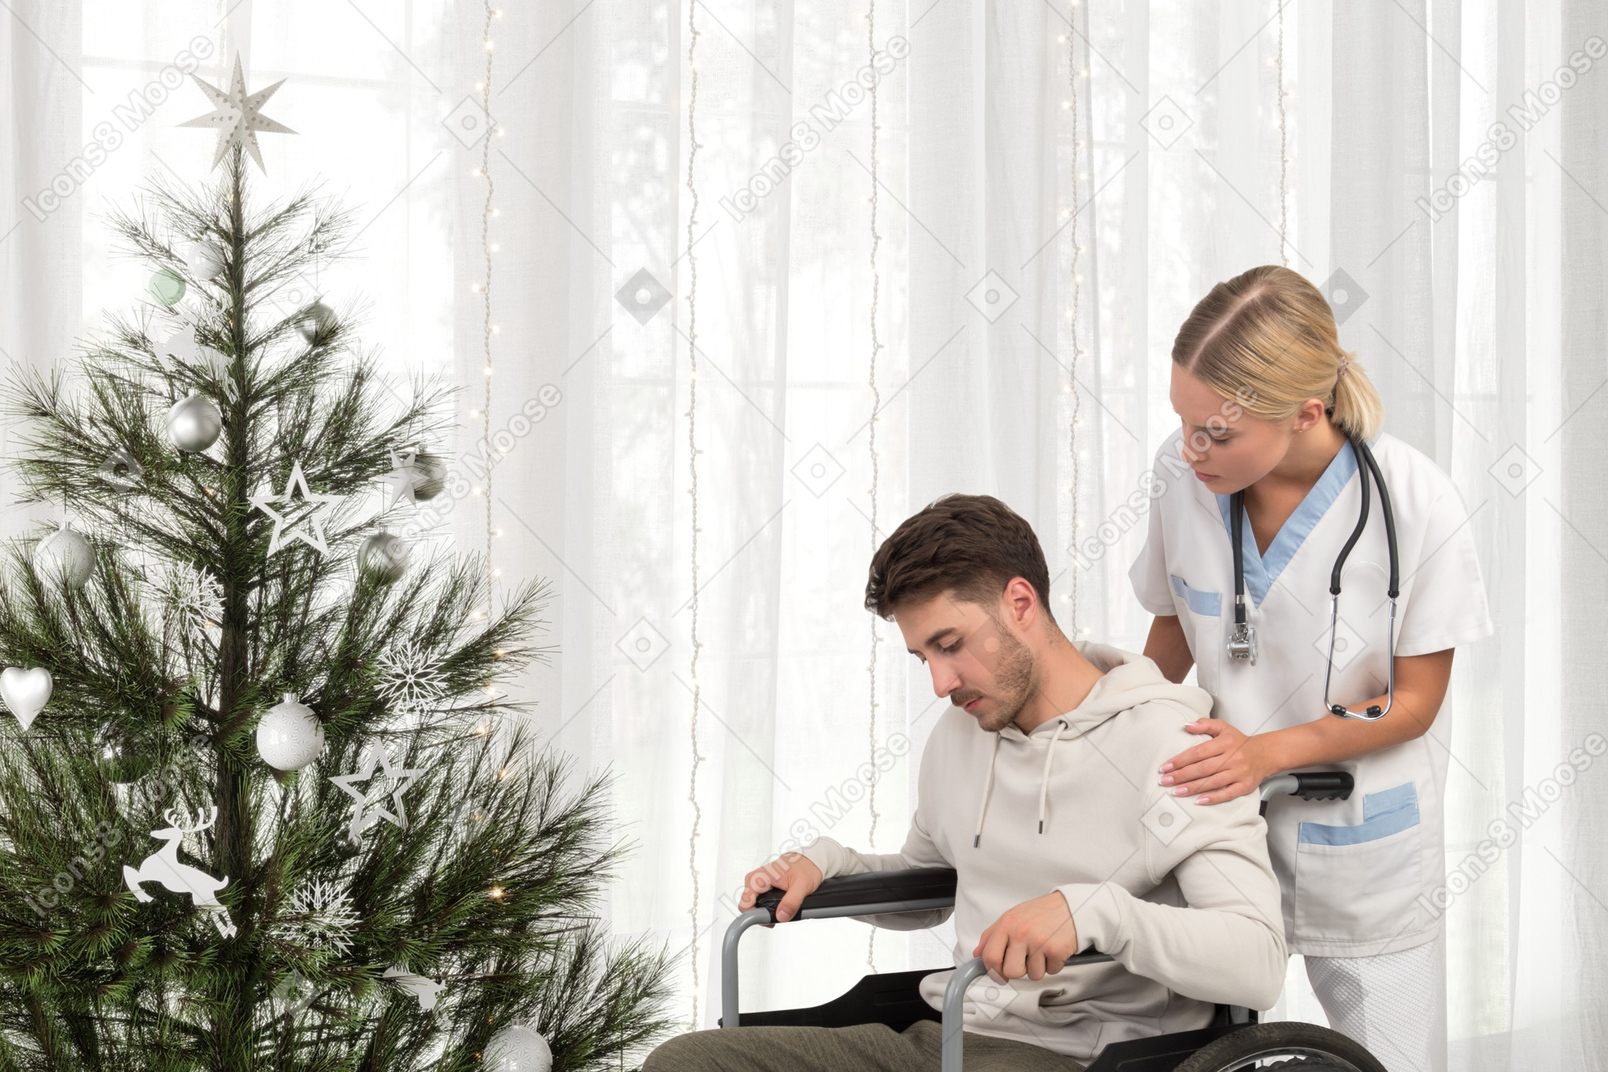 Krankenschwester hilft mann im rollstuhl, sein weihnachtsgeschenk zu bekommen